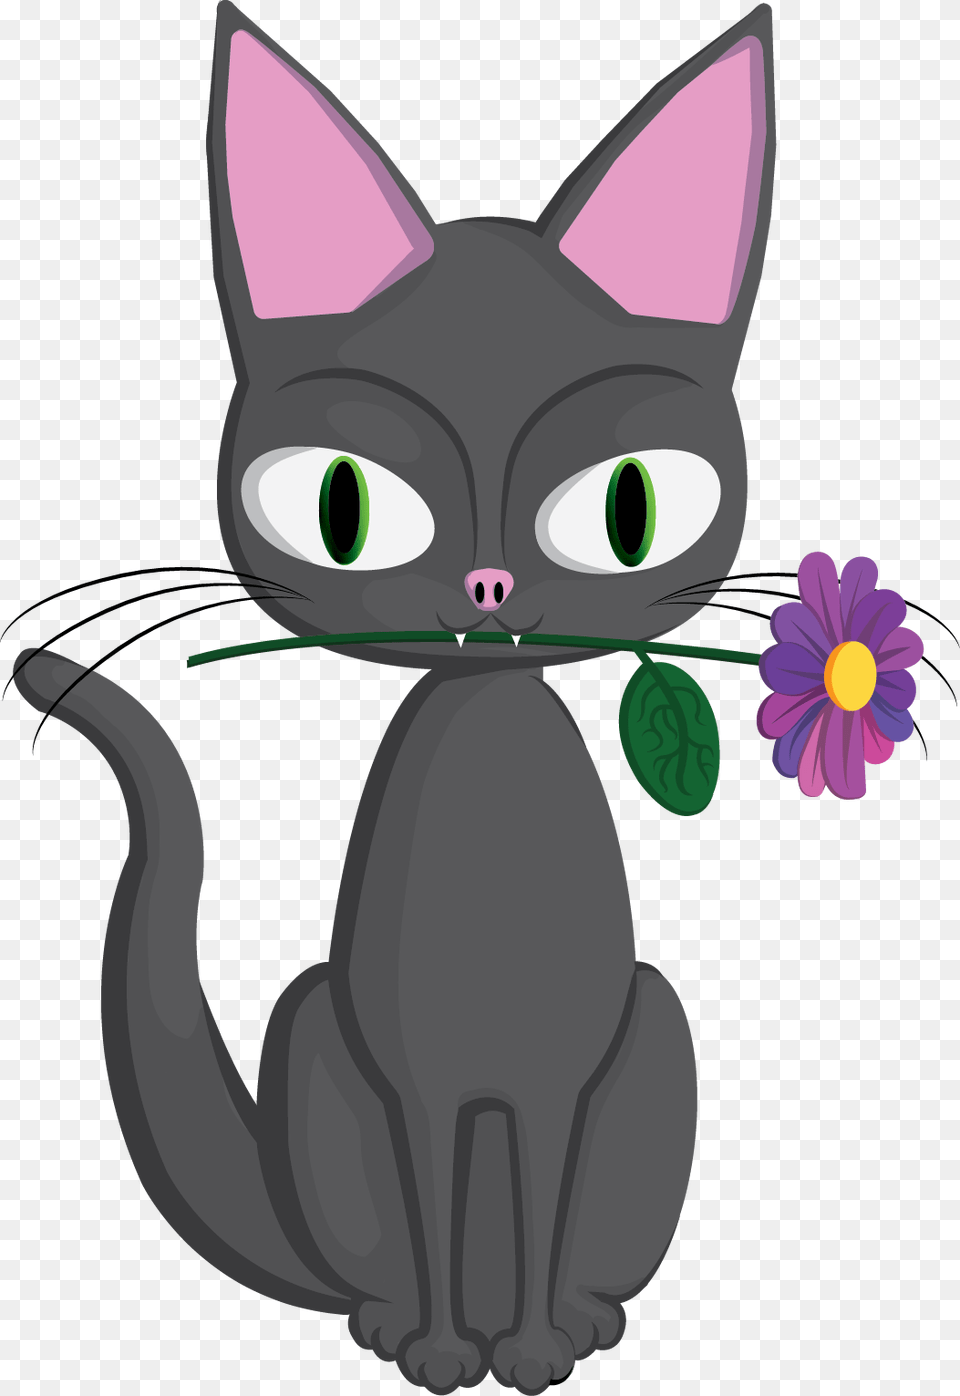 Cat Logo For Clothing Adobe Illustrator Cartoon, Animal, Mammal, Pet, Bear Free Png Download